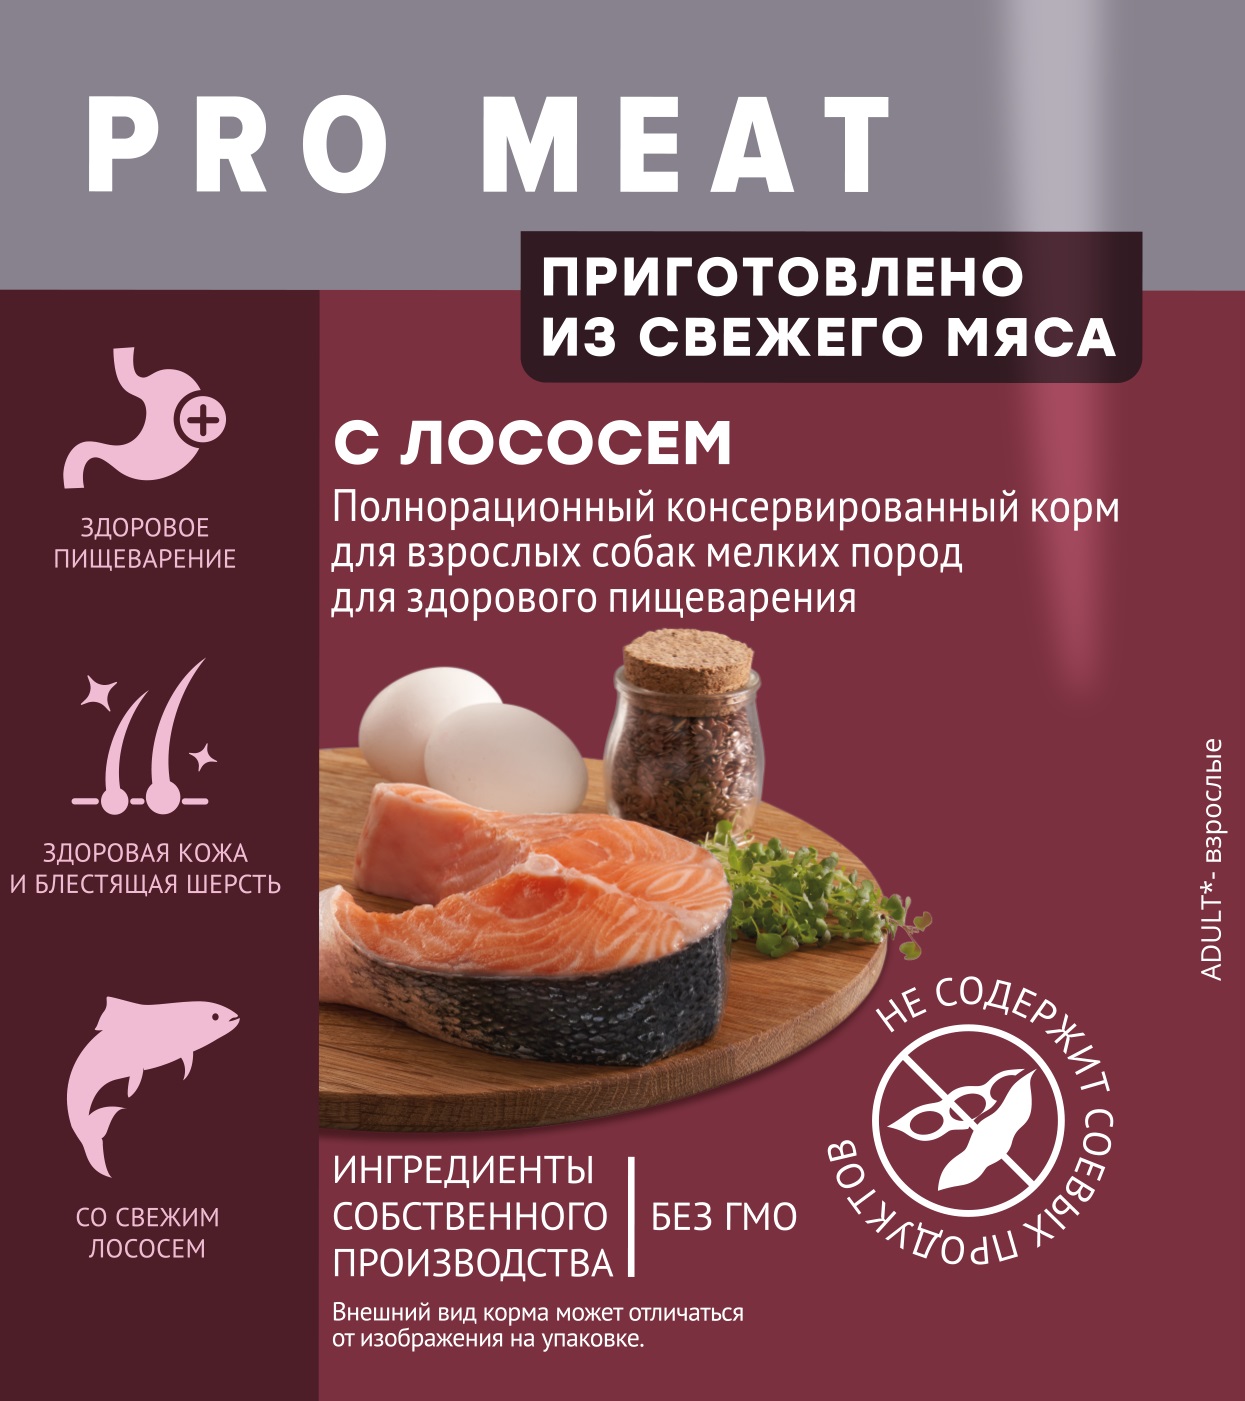 Паучи Мираторг Pro Meat для собак мелких пород с чувствительным пищеварением с лососем